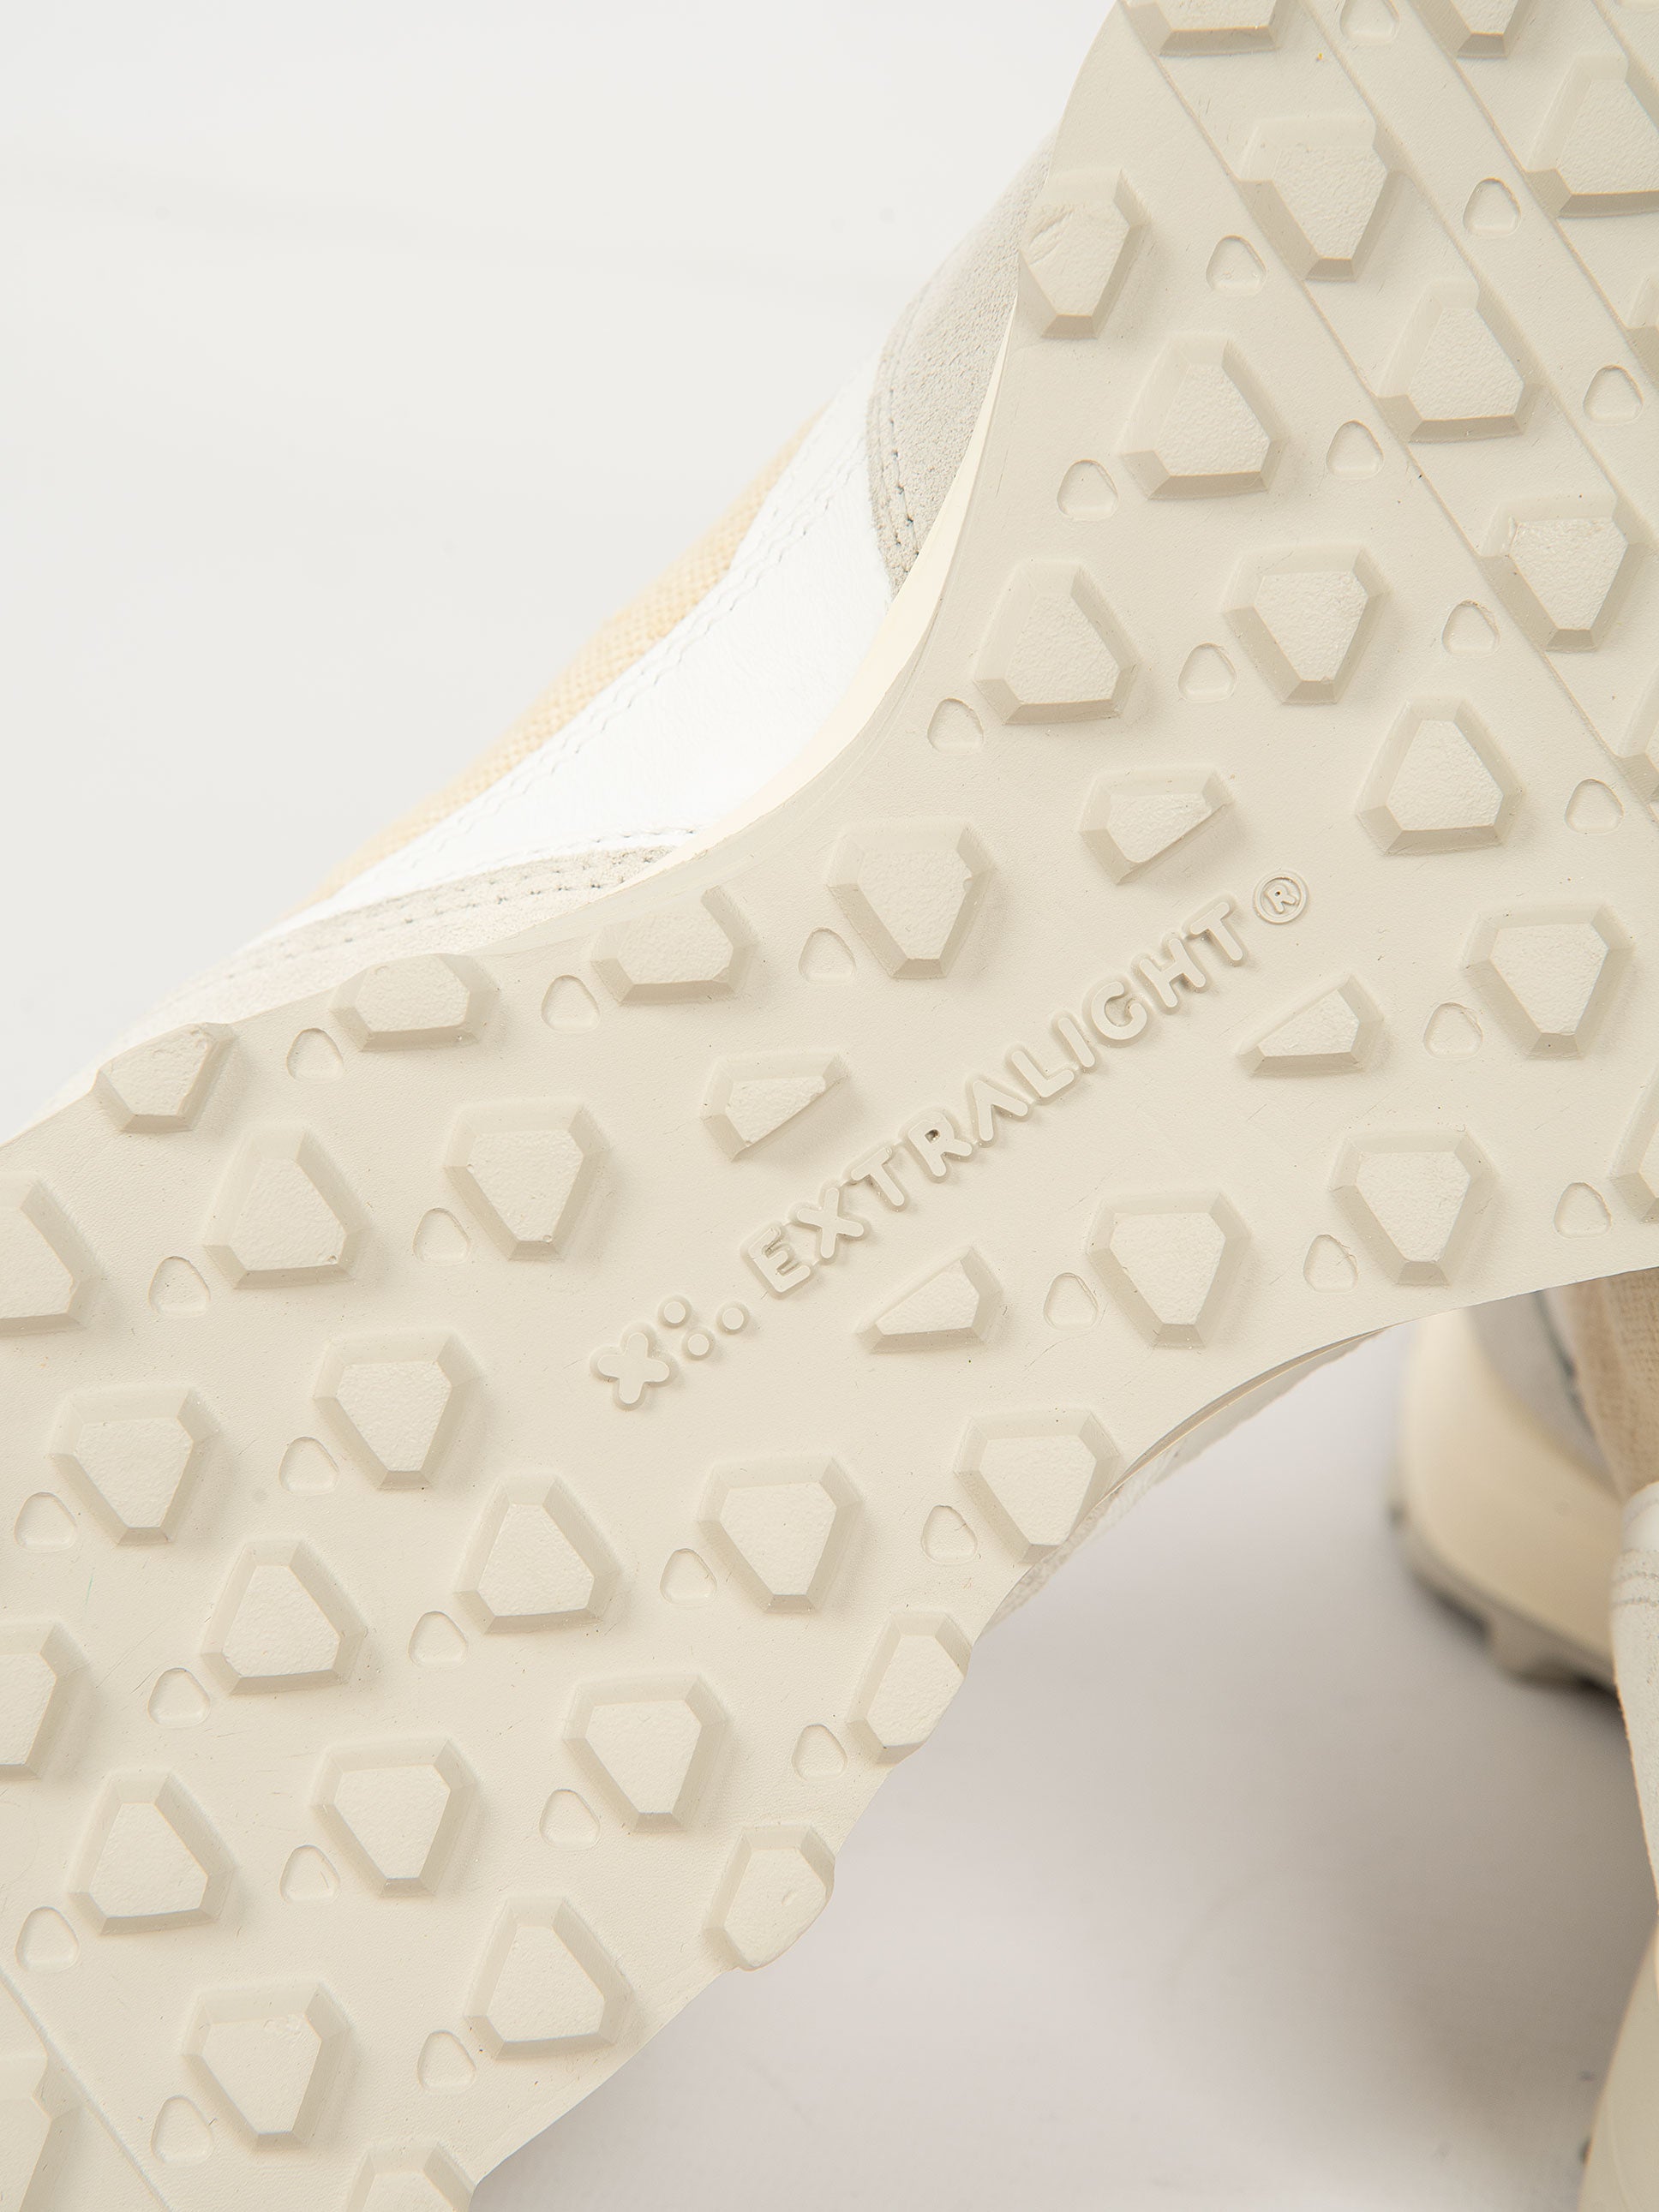 Sneakers' Vetta' - Bianco/Grigio